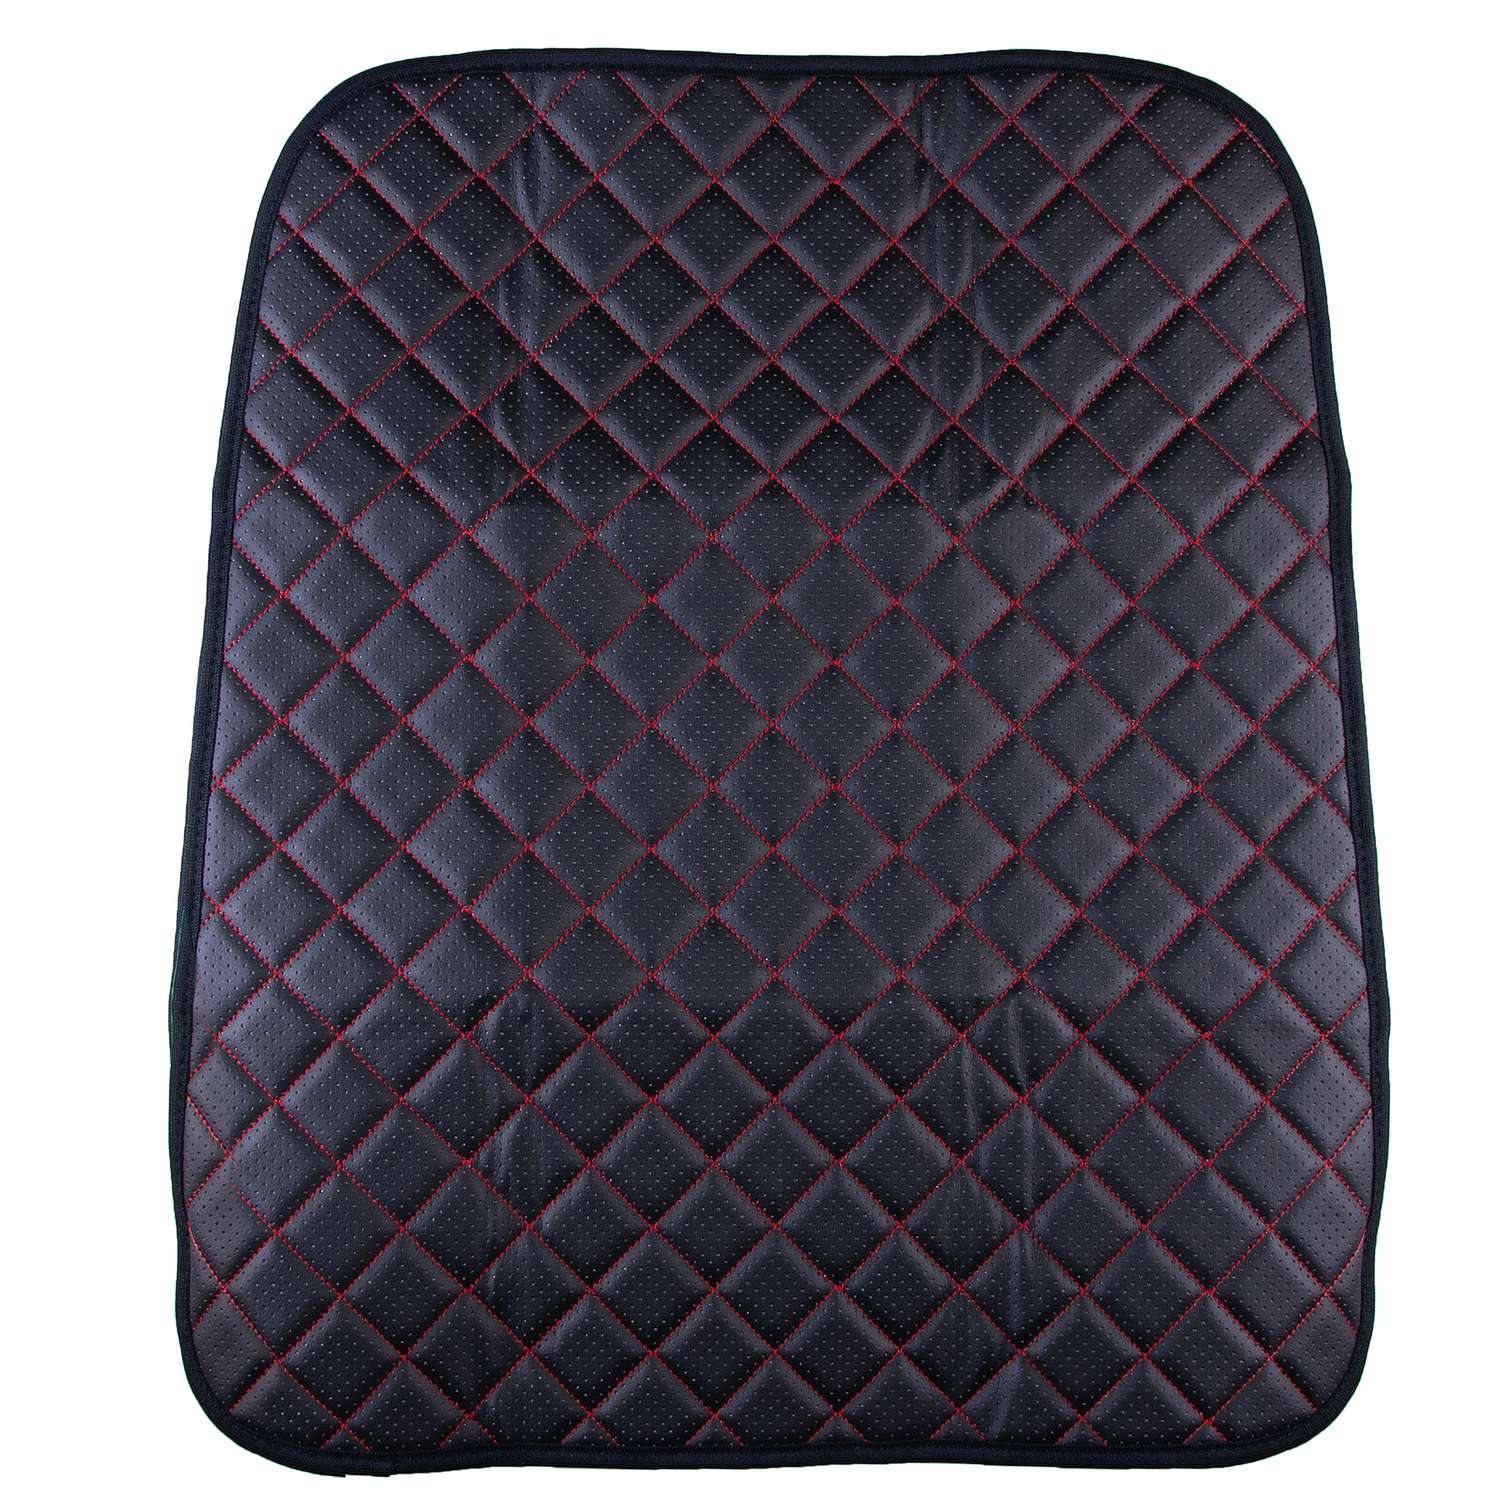 Защита спинки сиденья SKYWAY 60х50 см кожа искусственная перфорированная (черная/строчка красная) - фото 1